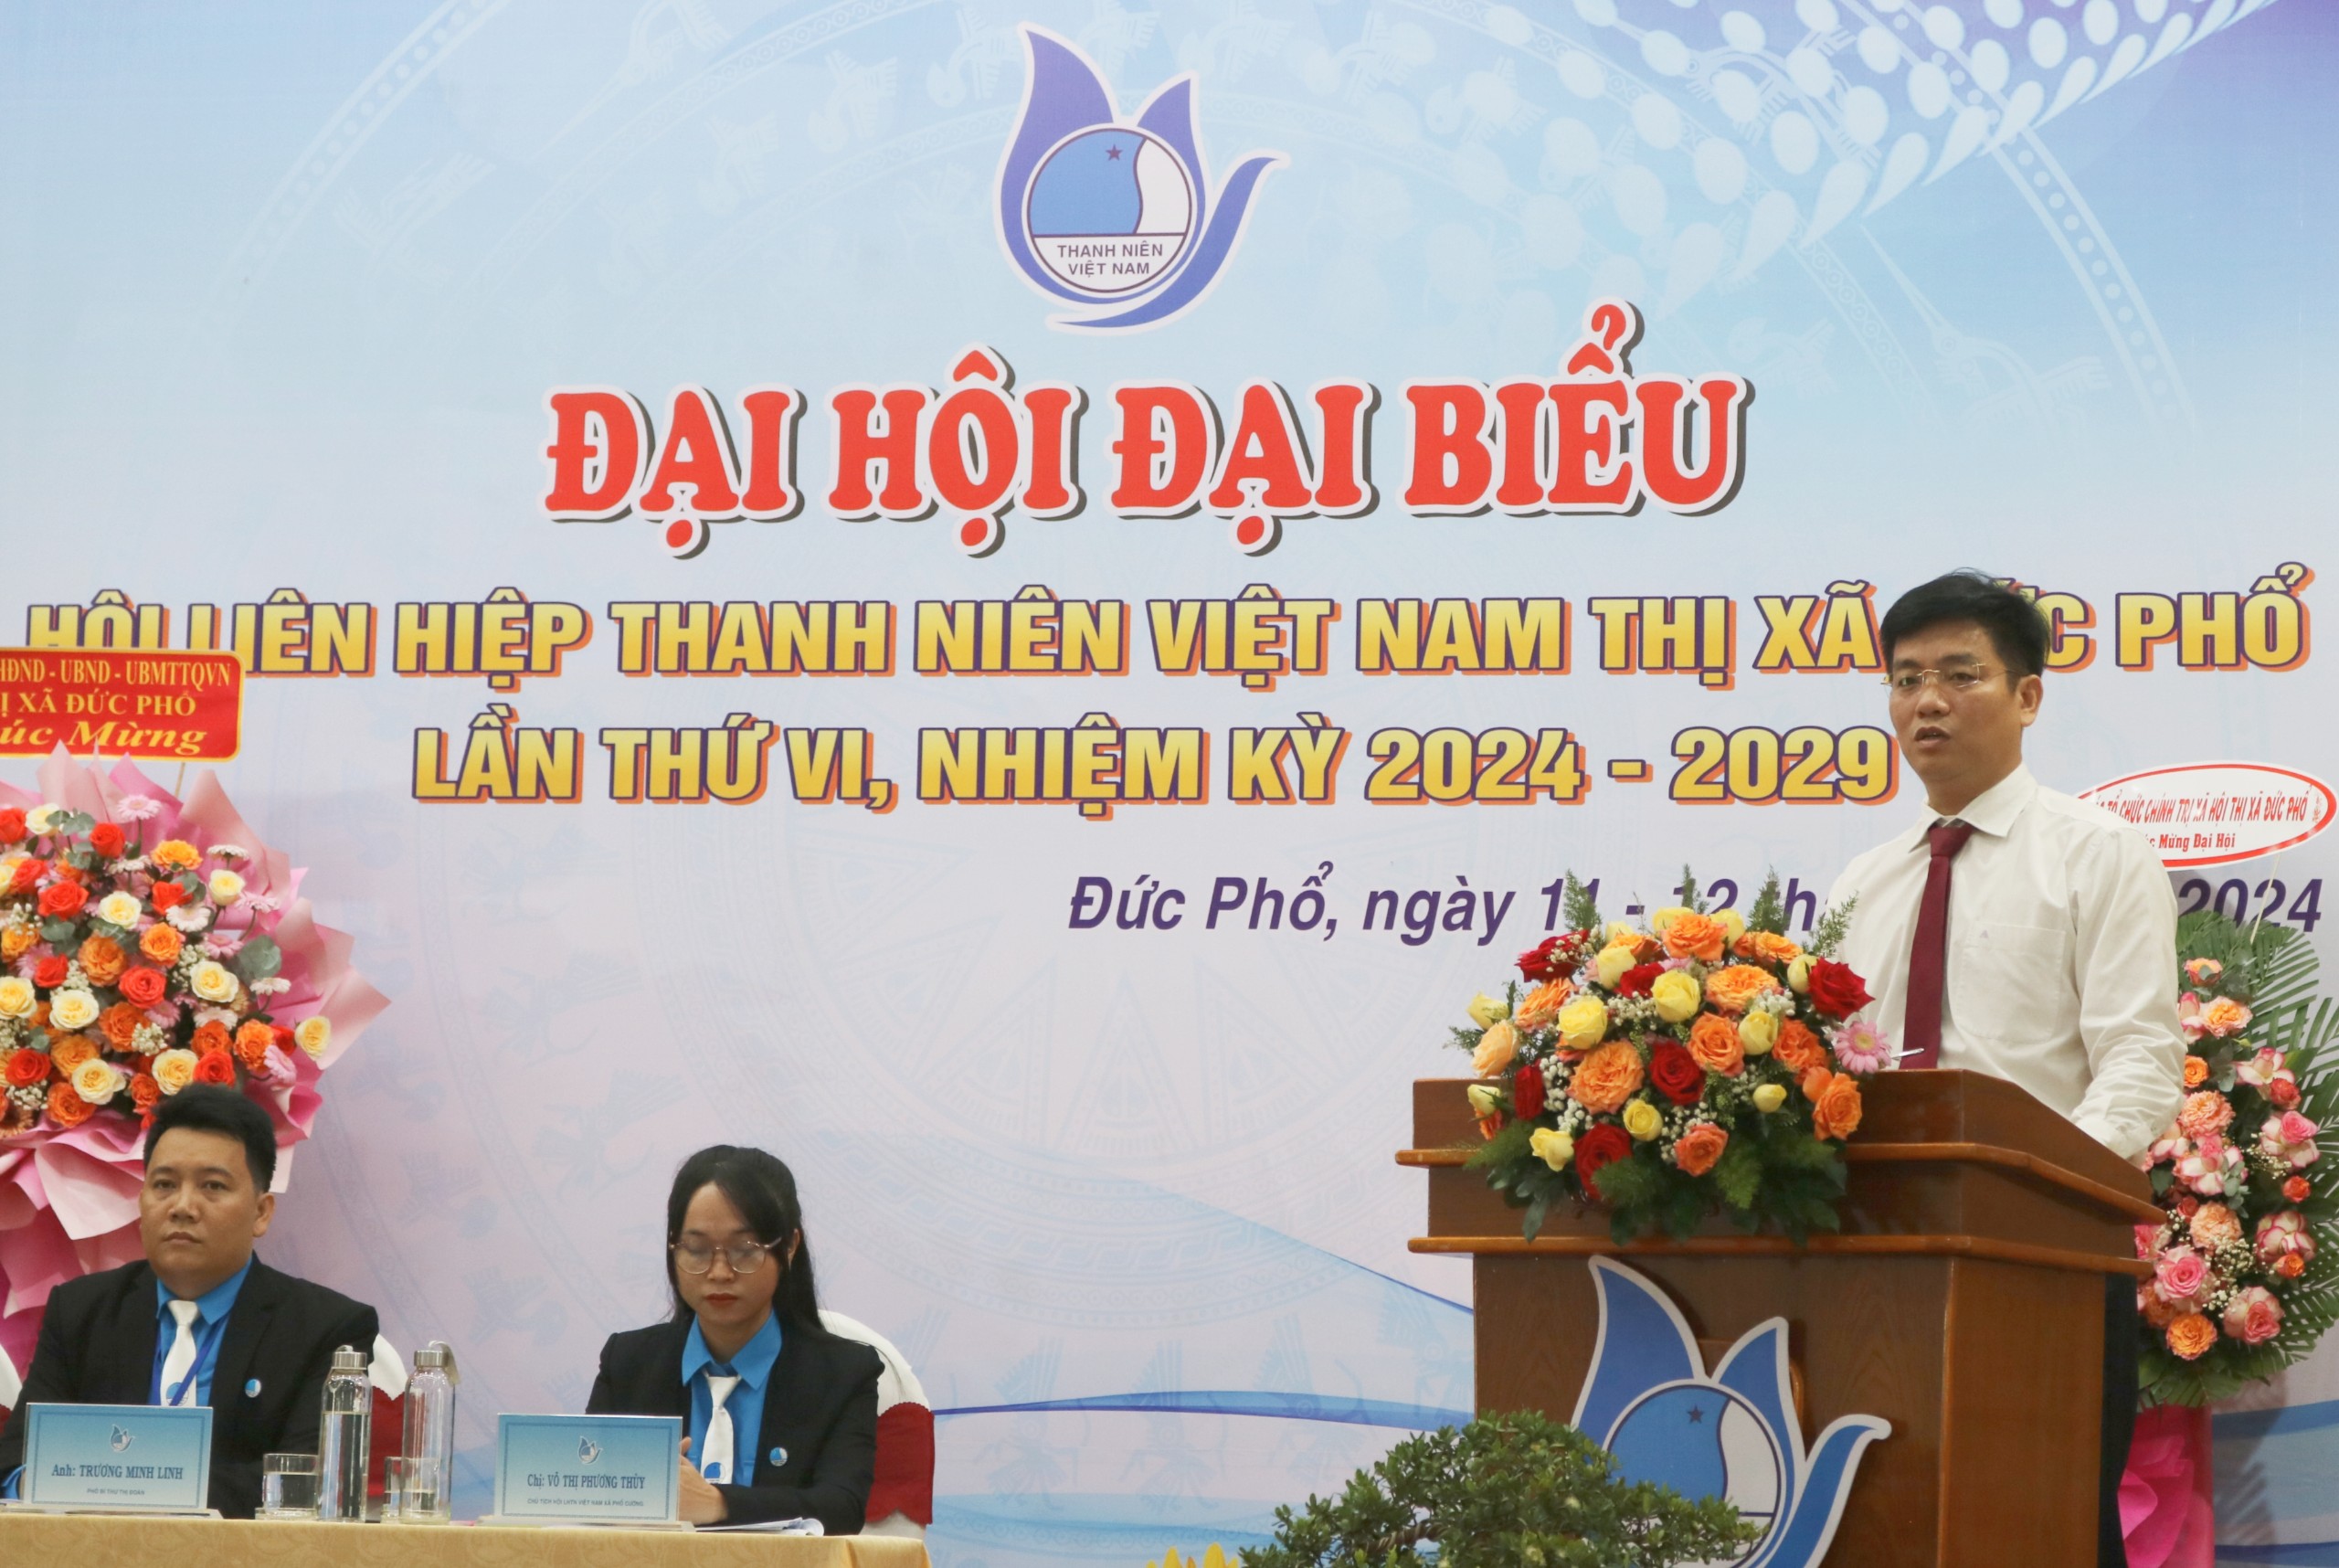 Đại hội đại biểu Hội Liên hiệp Thanh niên Việt Nam thị xã Đức Phổ lần thứ VI, nhiệm kỳ 2024 - 2029